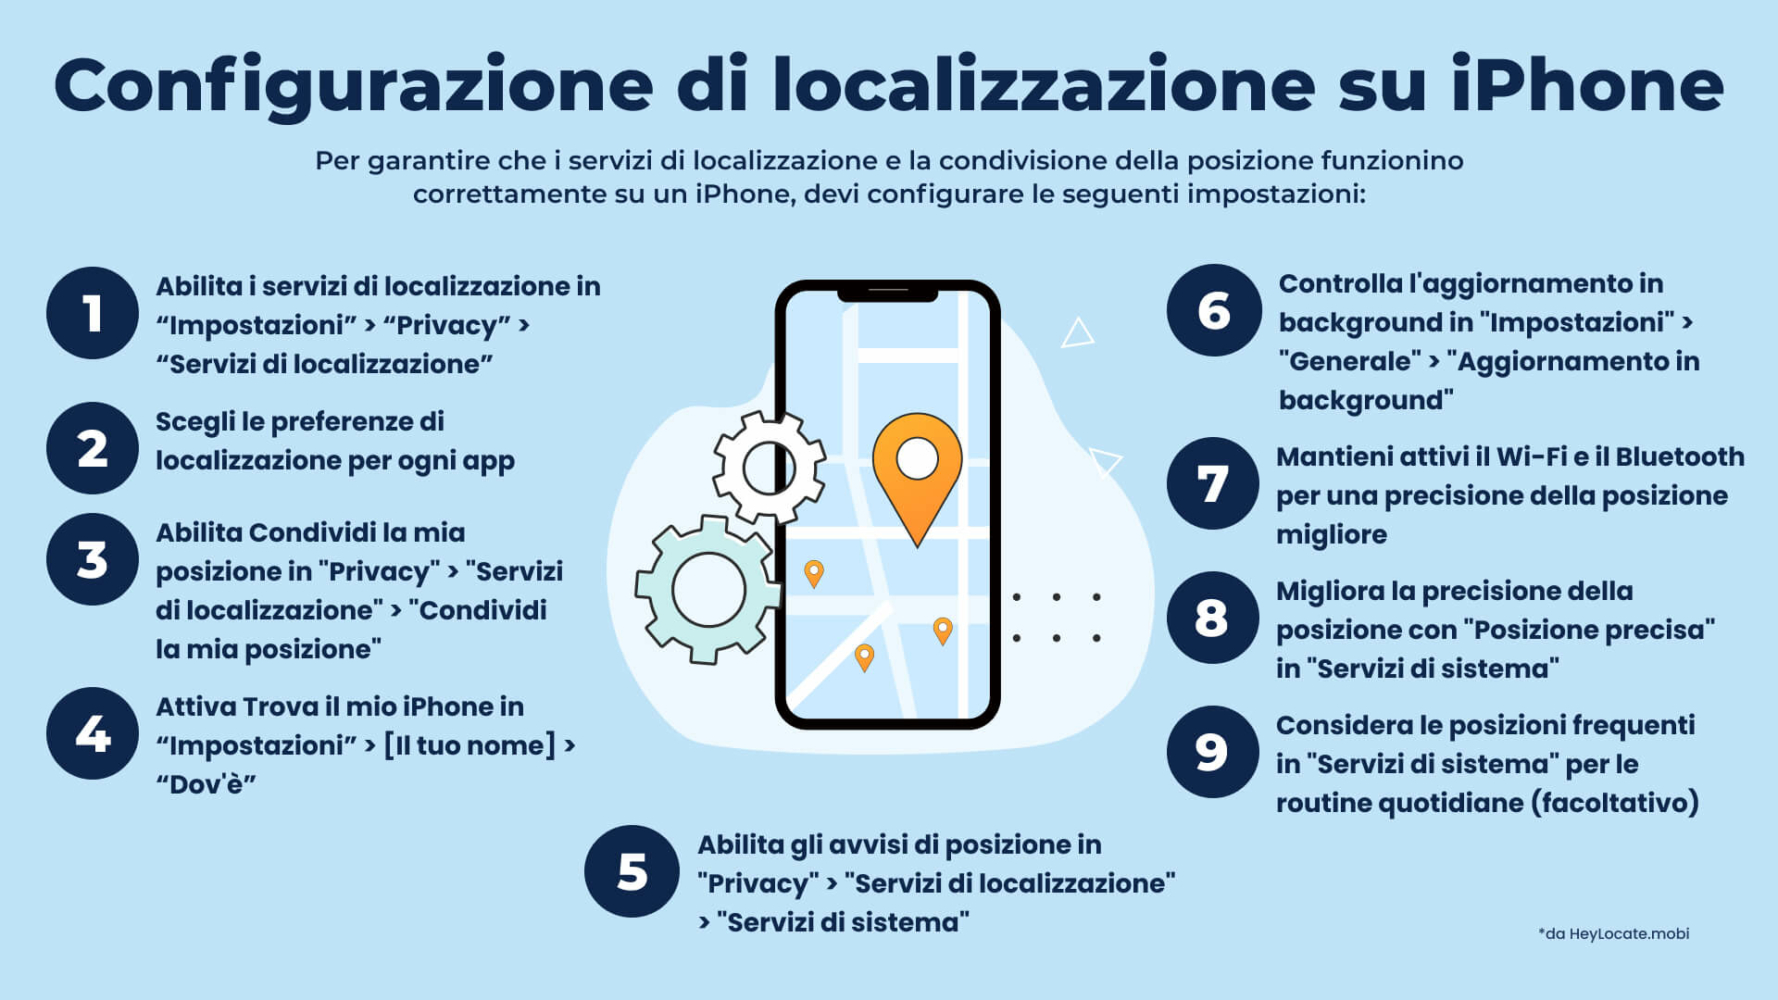 Come impostare i servizi di localizzazione su iPhone - Infografica di HeyLocate
